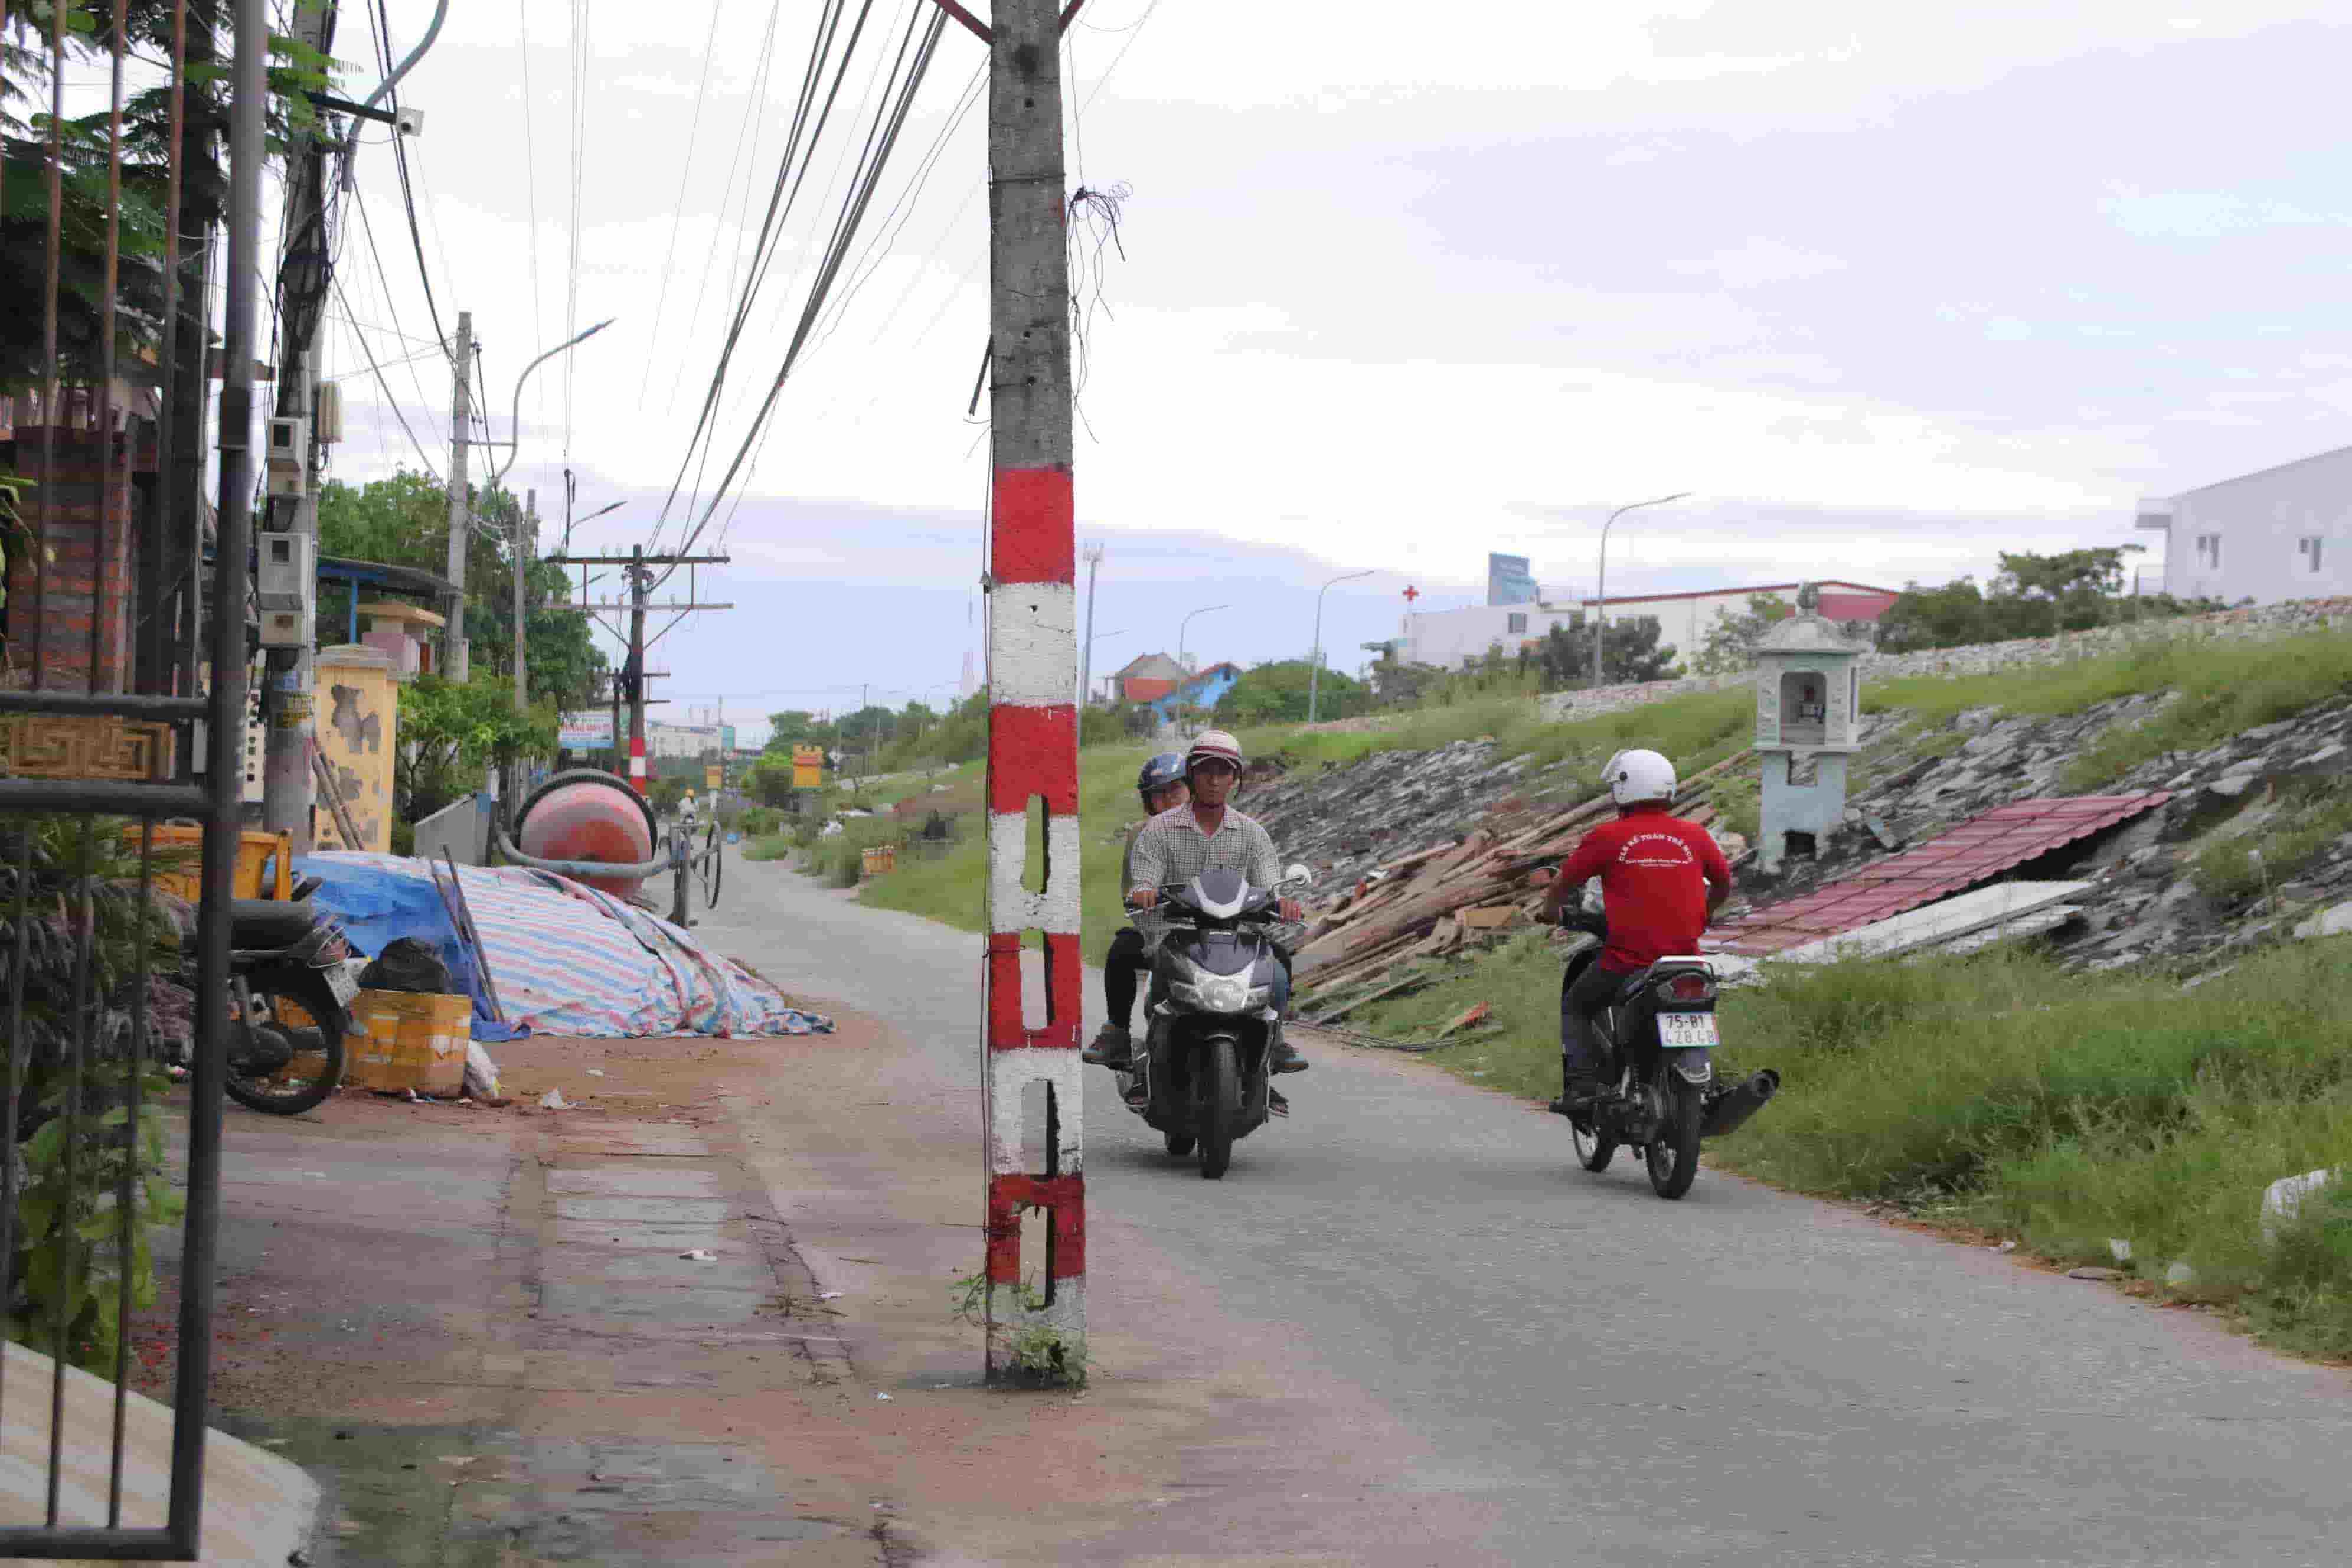 Theo ghi nhận của Lao Động, những cây cột điện này nằm ở đường Dương Thiệu Tước, bắt đầu từ gầm cầu vượt Thủy Dương đến tận bến xe phía nam của TP. Huế.